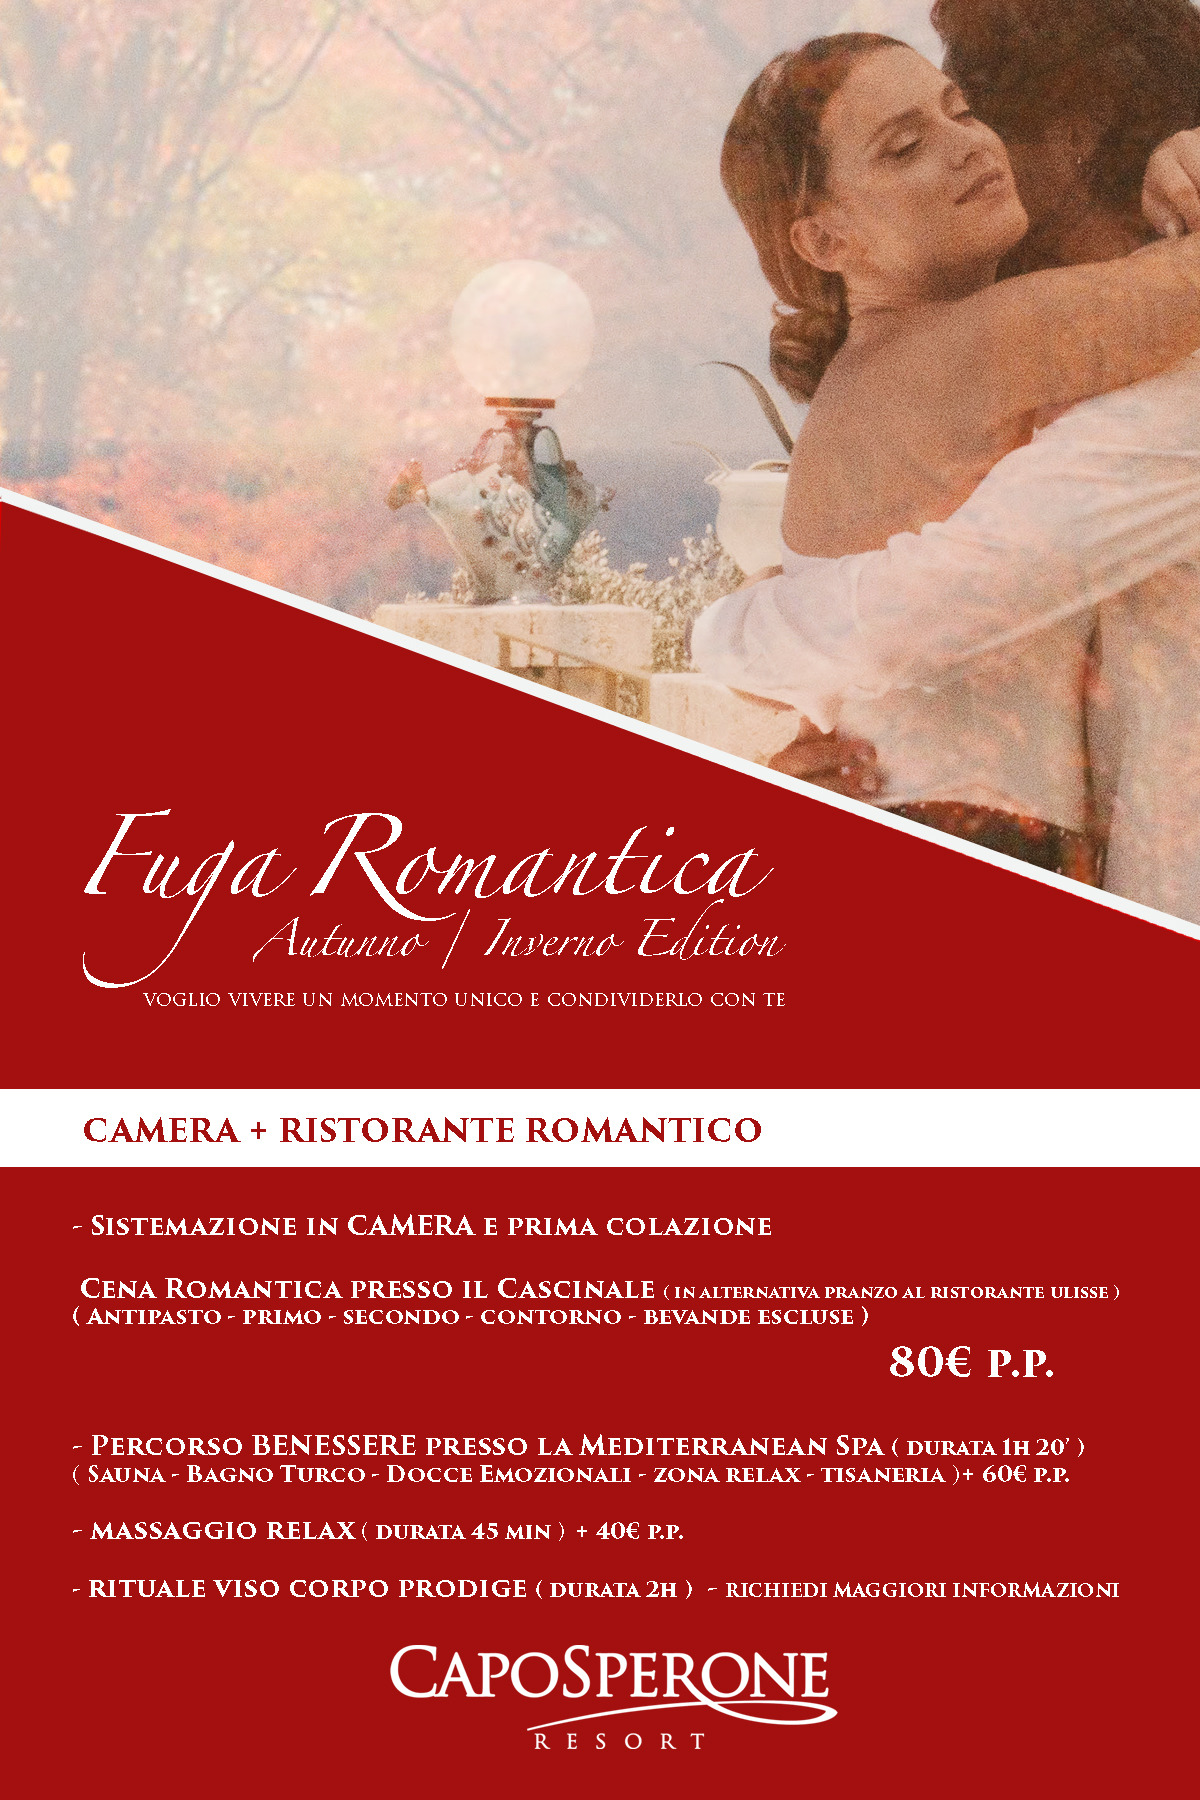 Fuga Romantica Inverno Edition 2